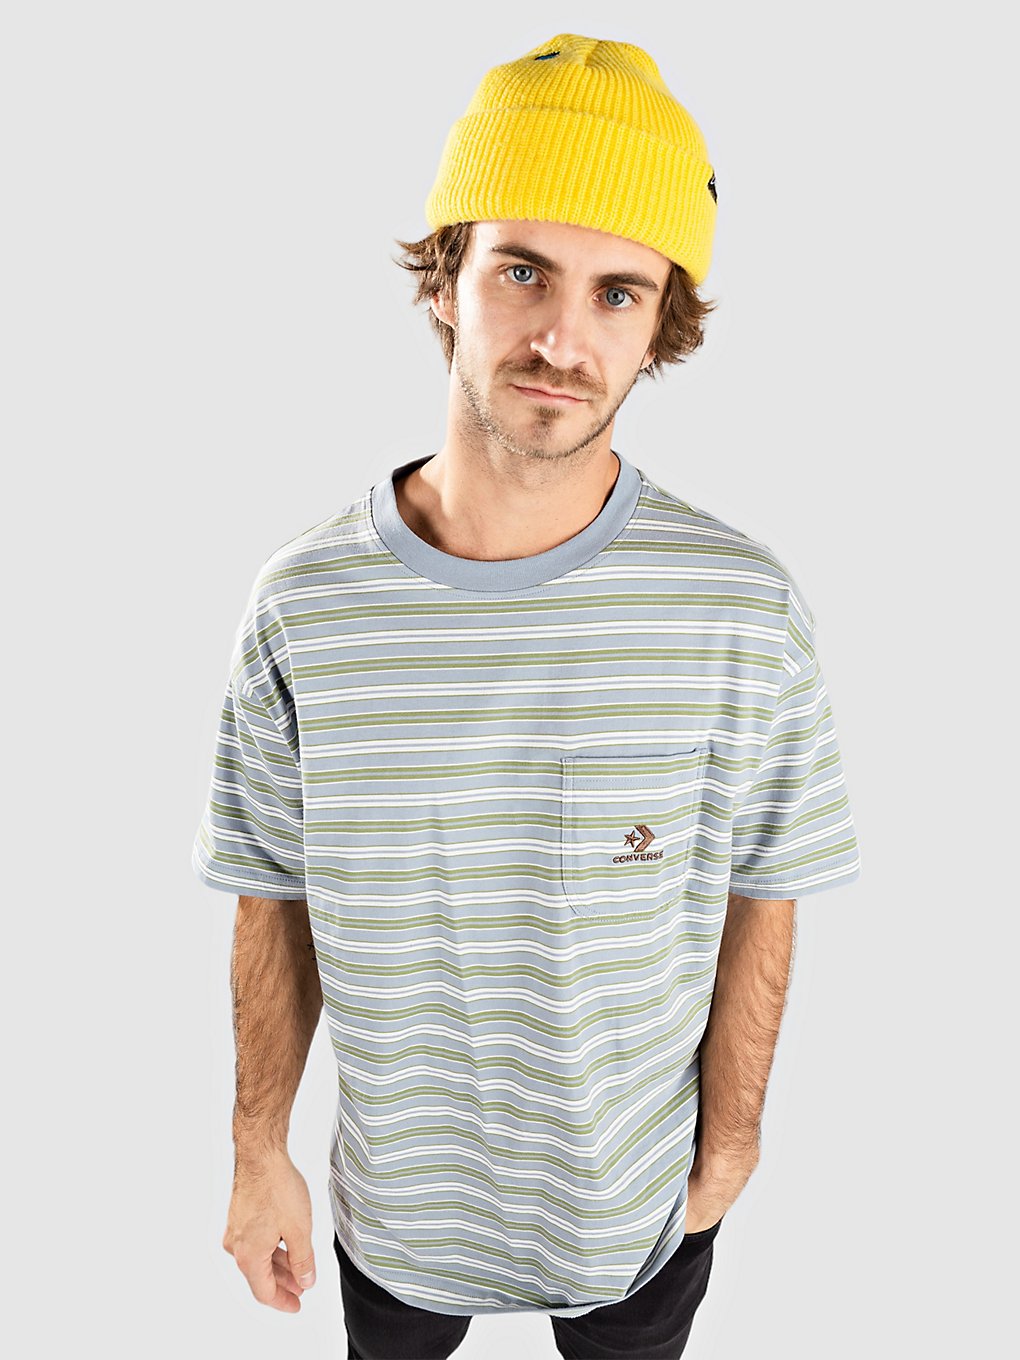 Converse Yarn Dye Pocket T-Shirt ocean retreat stripe kaufen